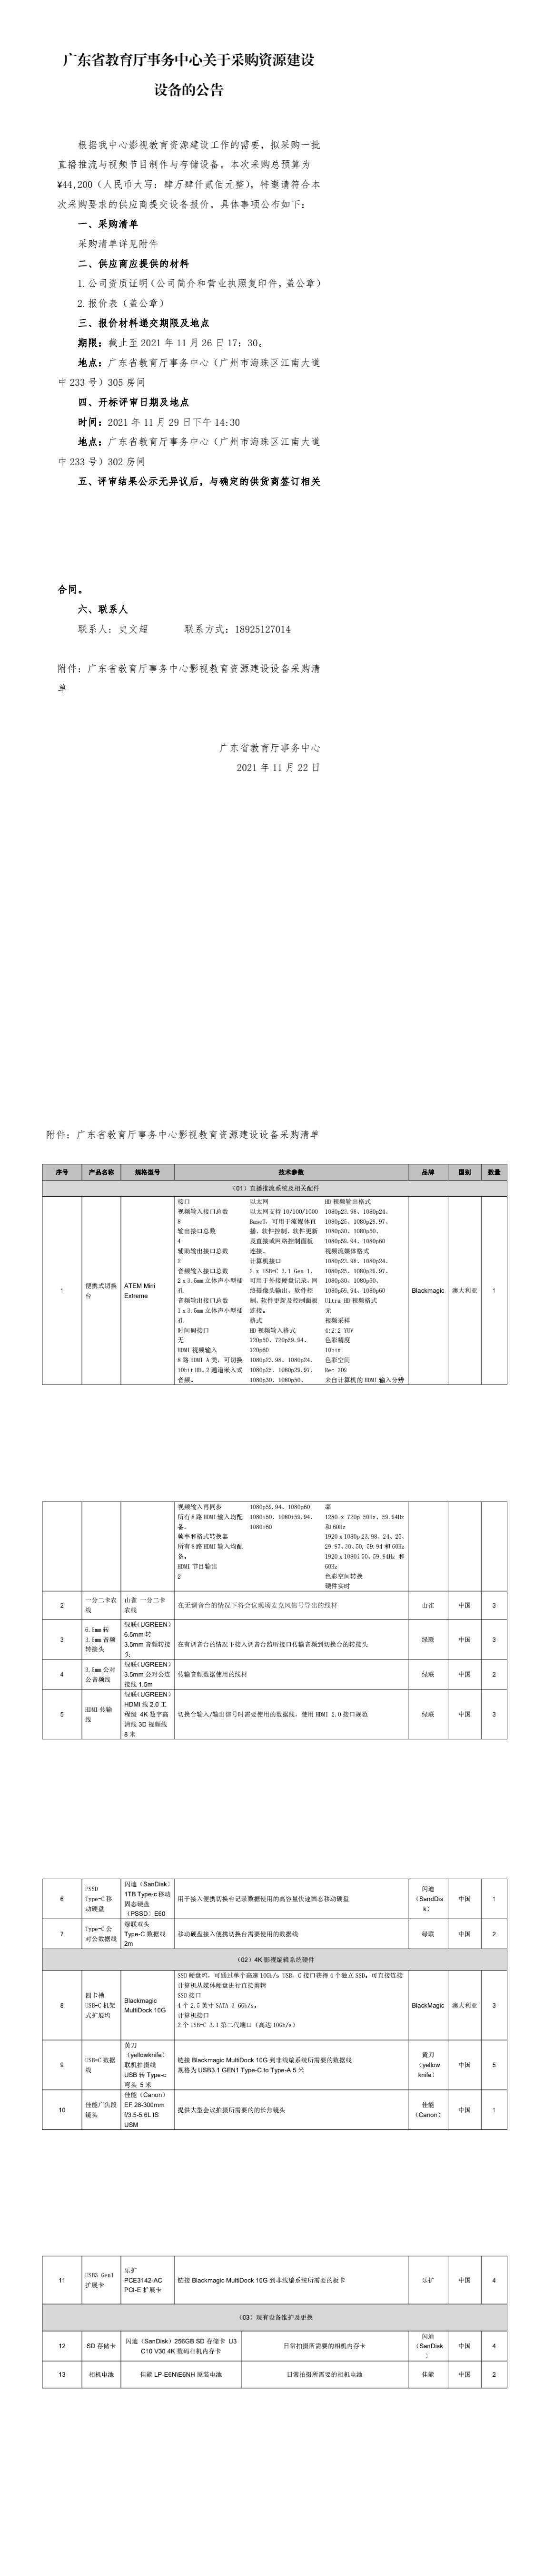 广东省教育厅事务中心关于采购资源建设设备的公告.png